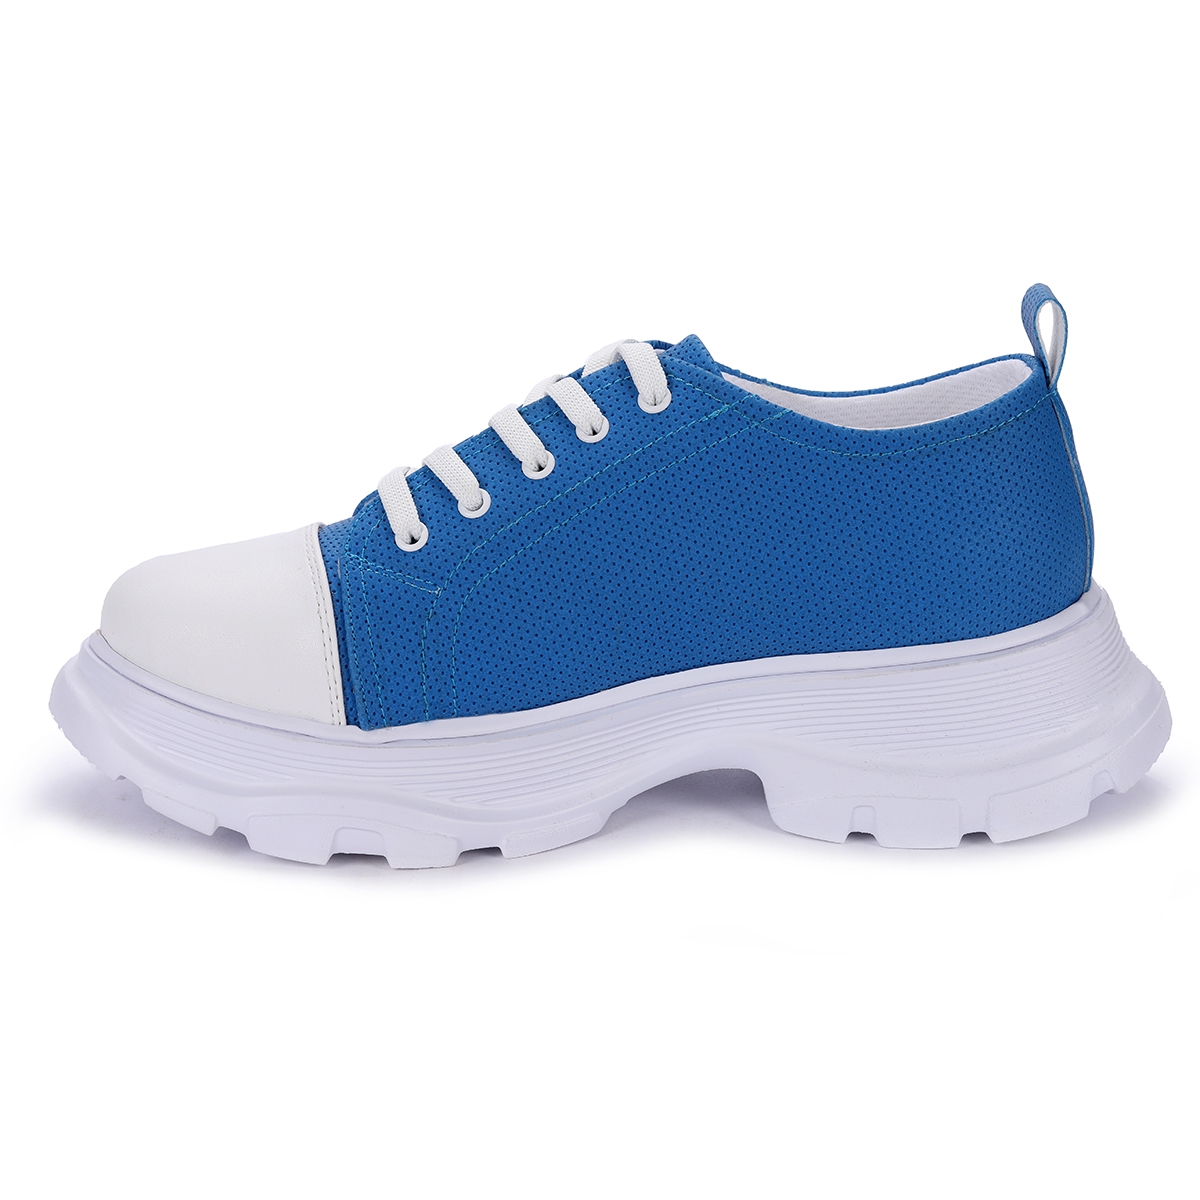 Flo Pnt 471021 Günlük Bağcıklı Kadın Spor Ayakkabı Mavi. 5